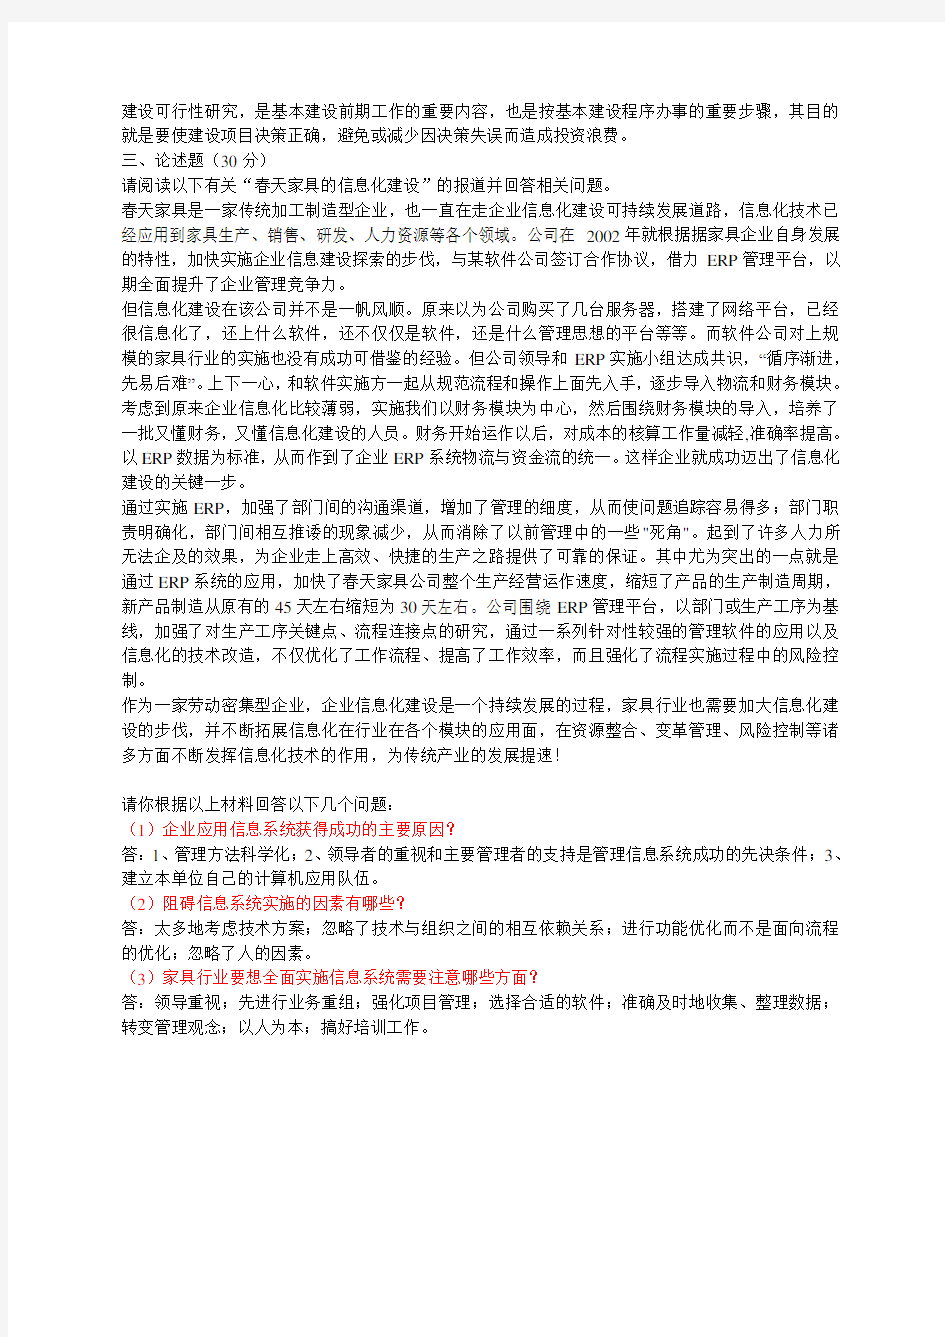 中国石油大学远程教育《管理信息系统》在线考试(开卷)试题